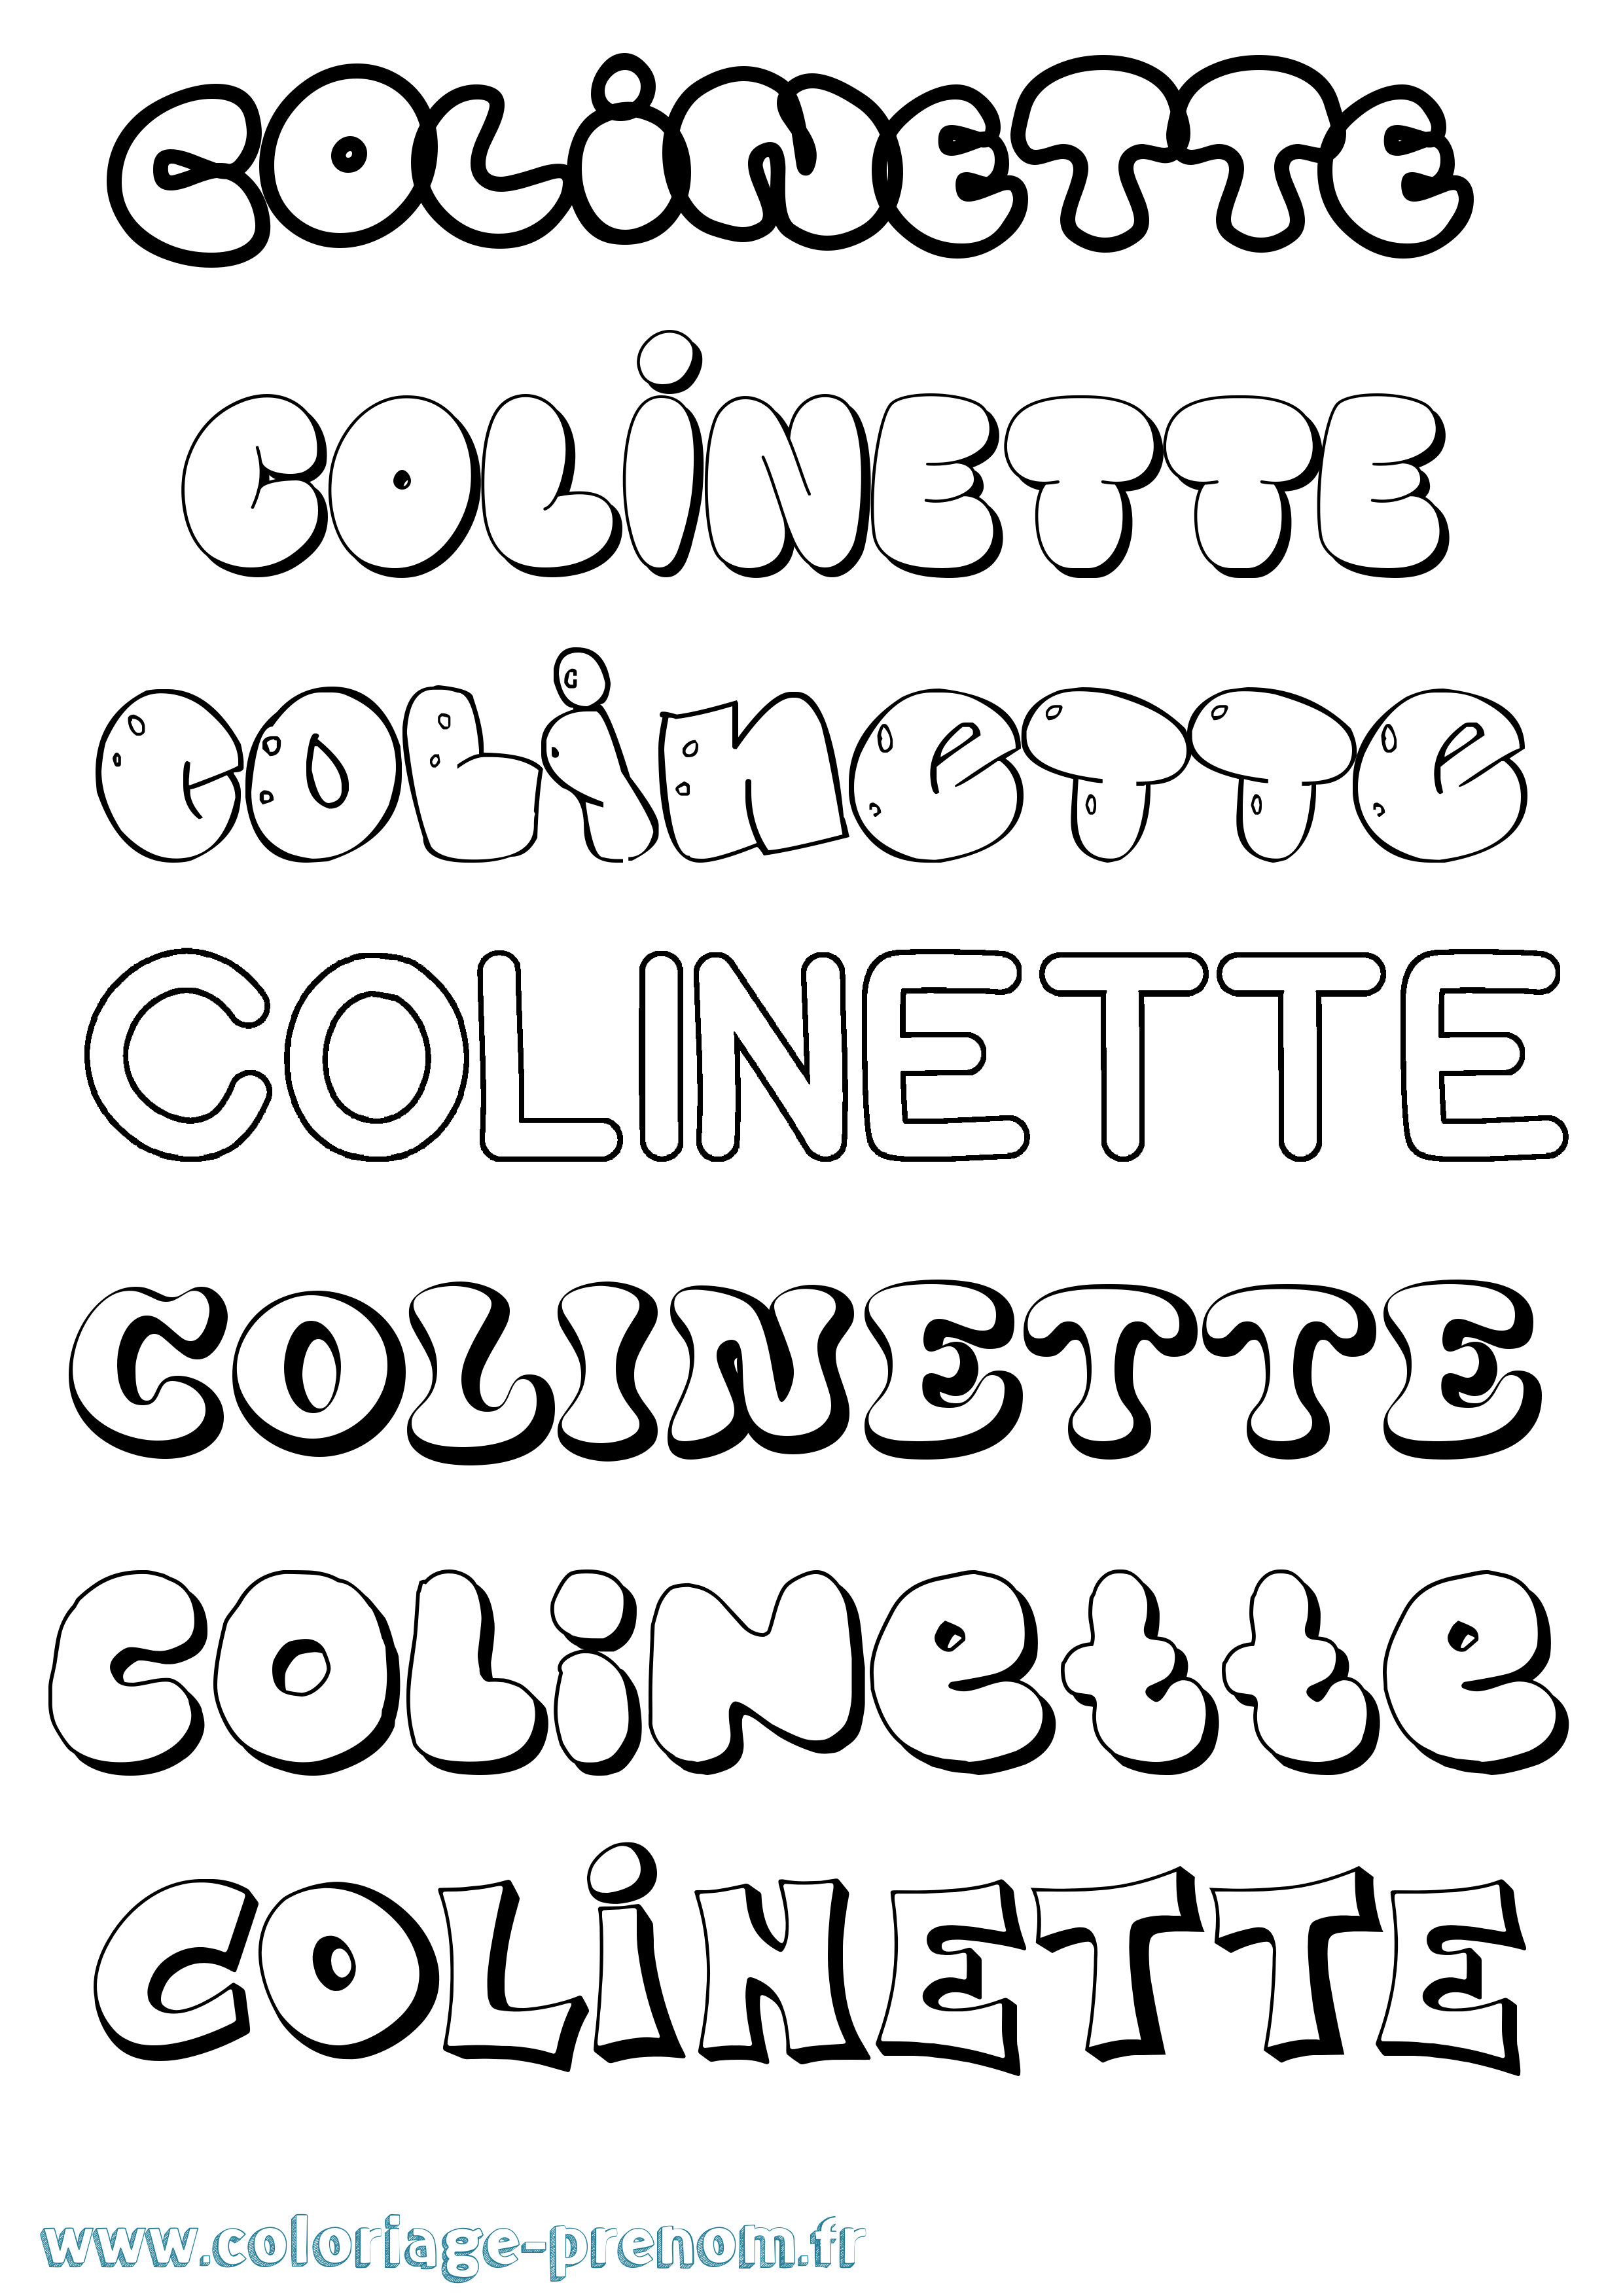 Coloriage prénom Colinette Bubble